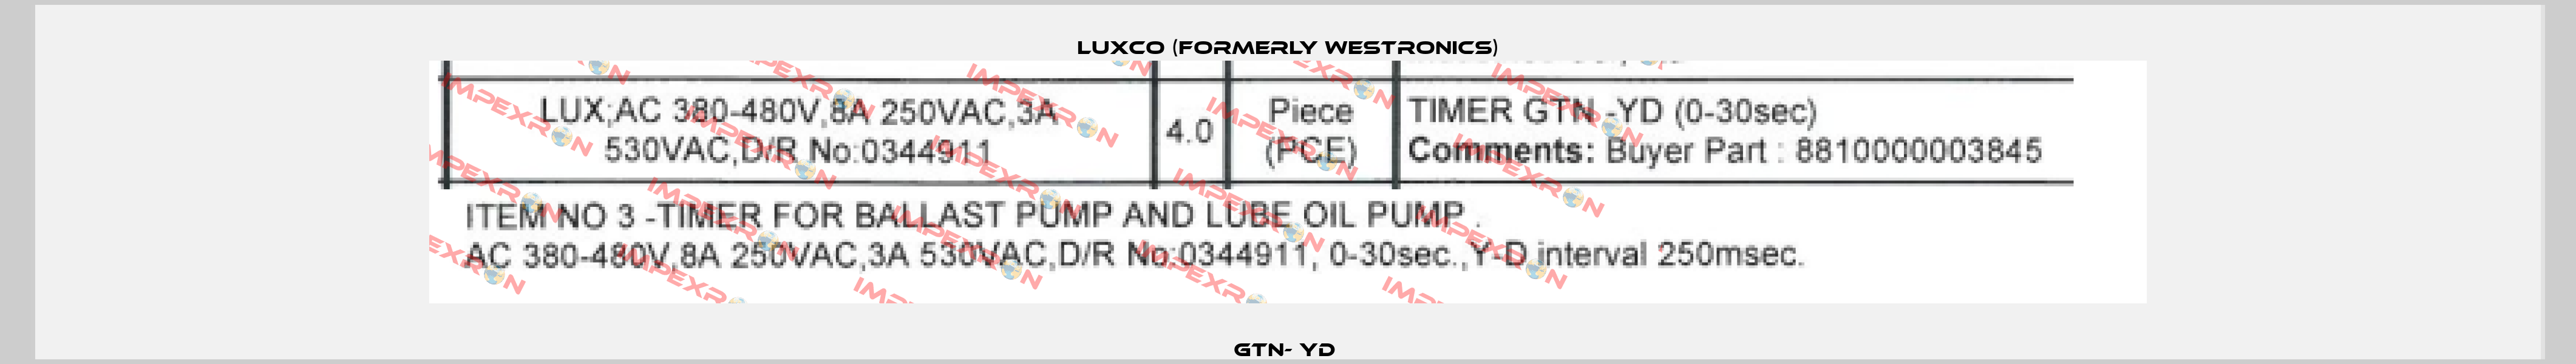 GTN- YD  Luxco (formerly Westronics)